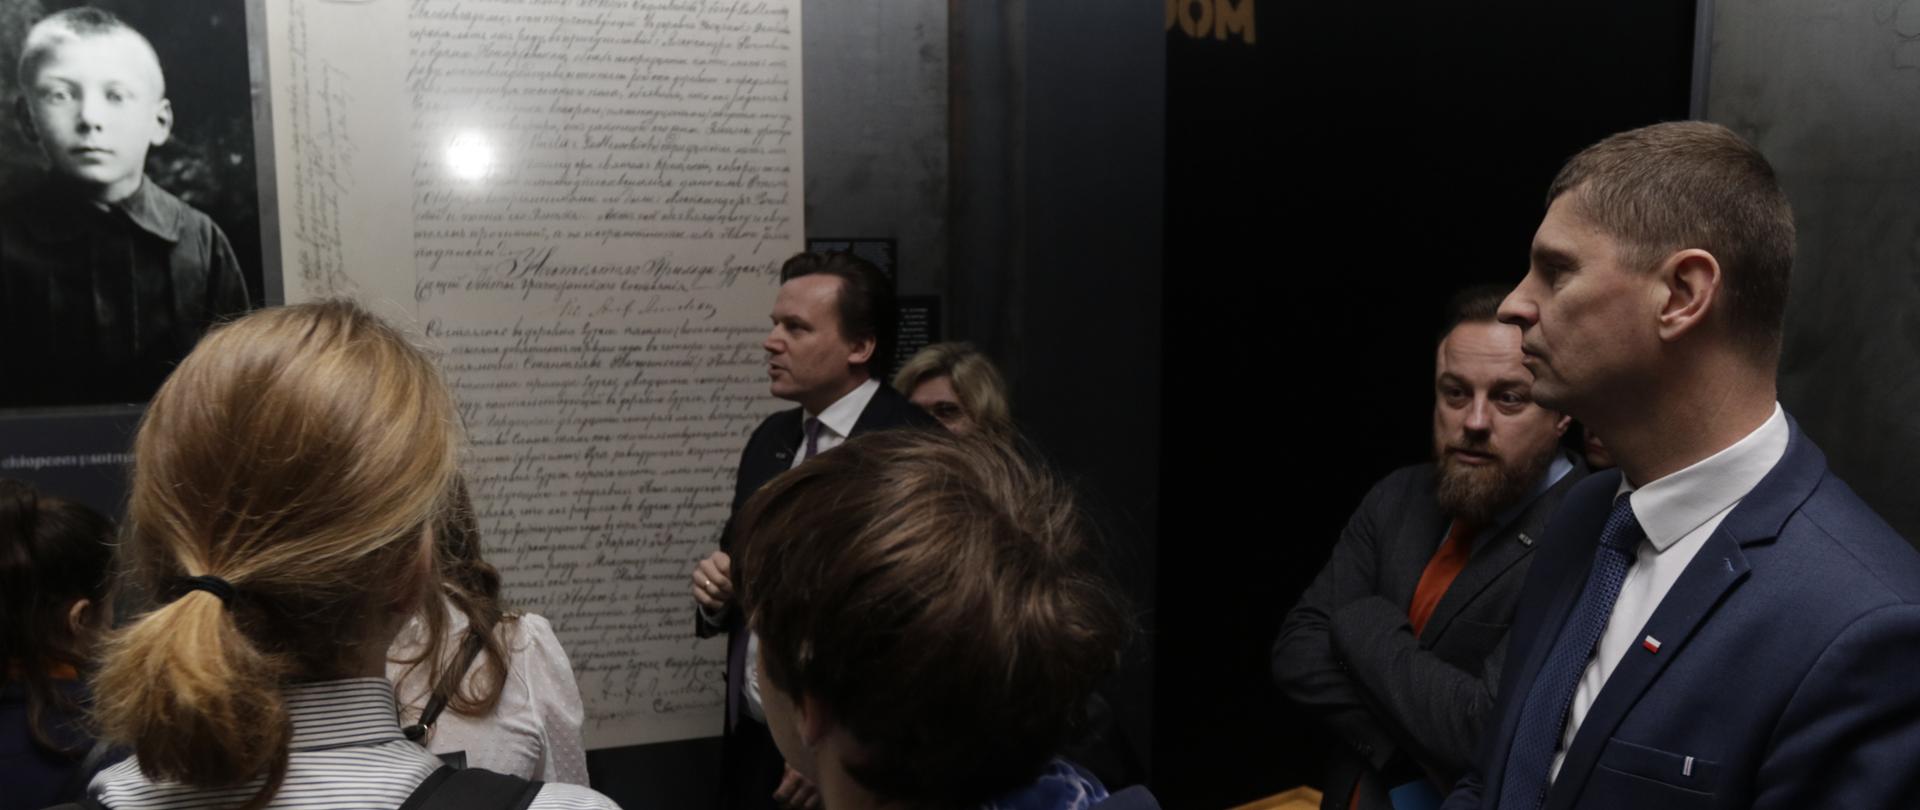 Minister Edukacji Narodowej – Dariusz Piontkowski – razem z innymi zwiedzającymi ogląda wystawę w Muzeum Jana Pawła II i Prymasa Wyszyńskiego